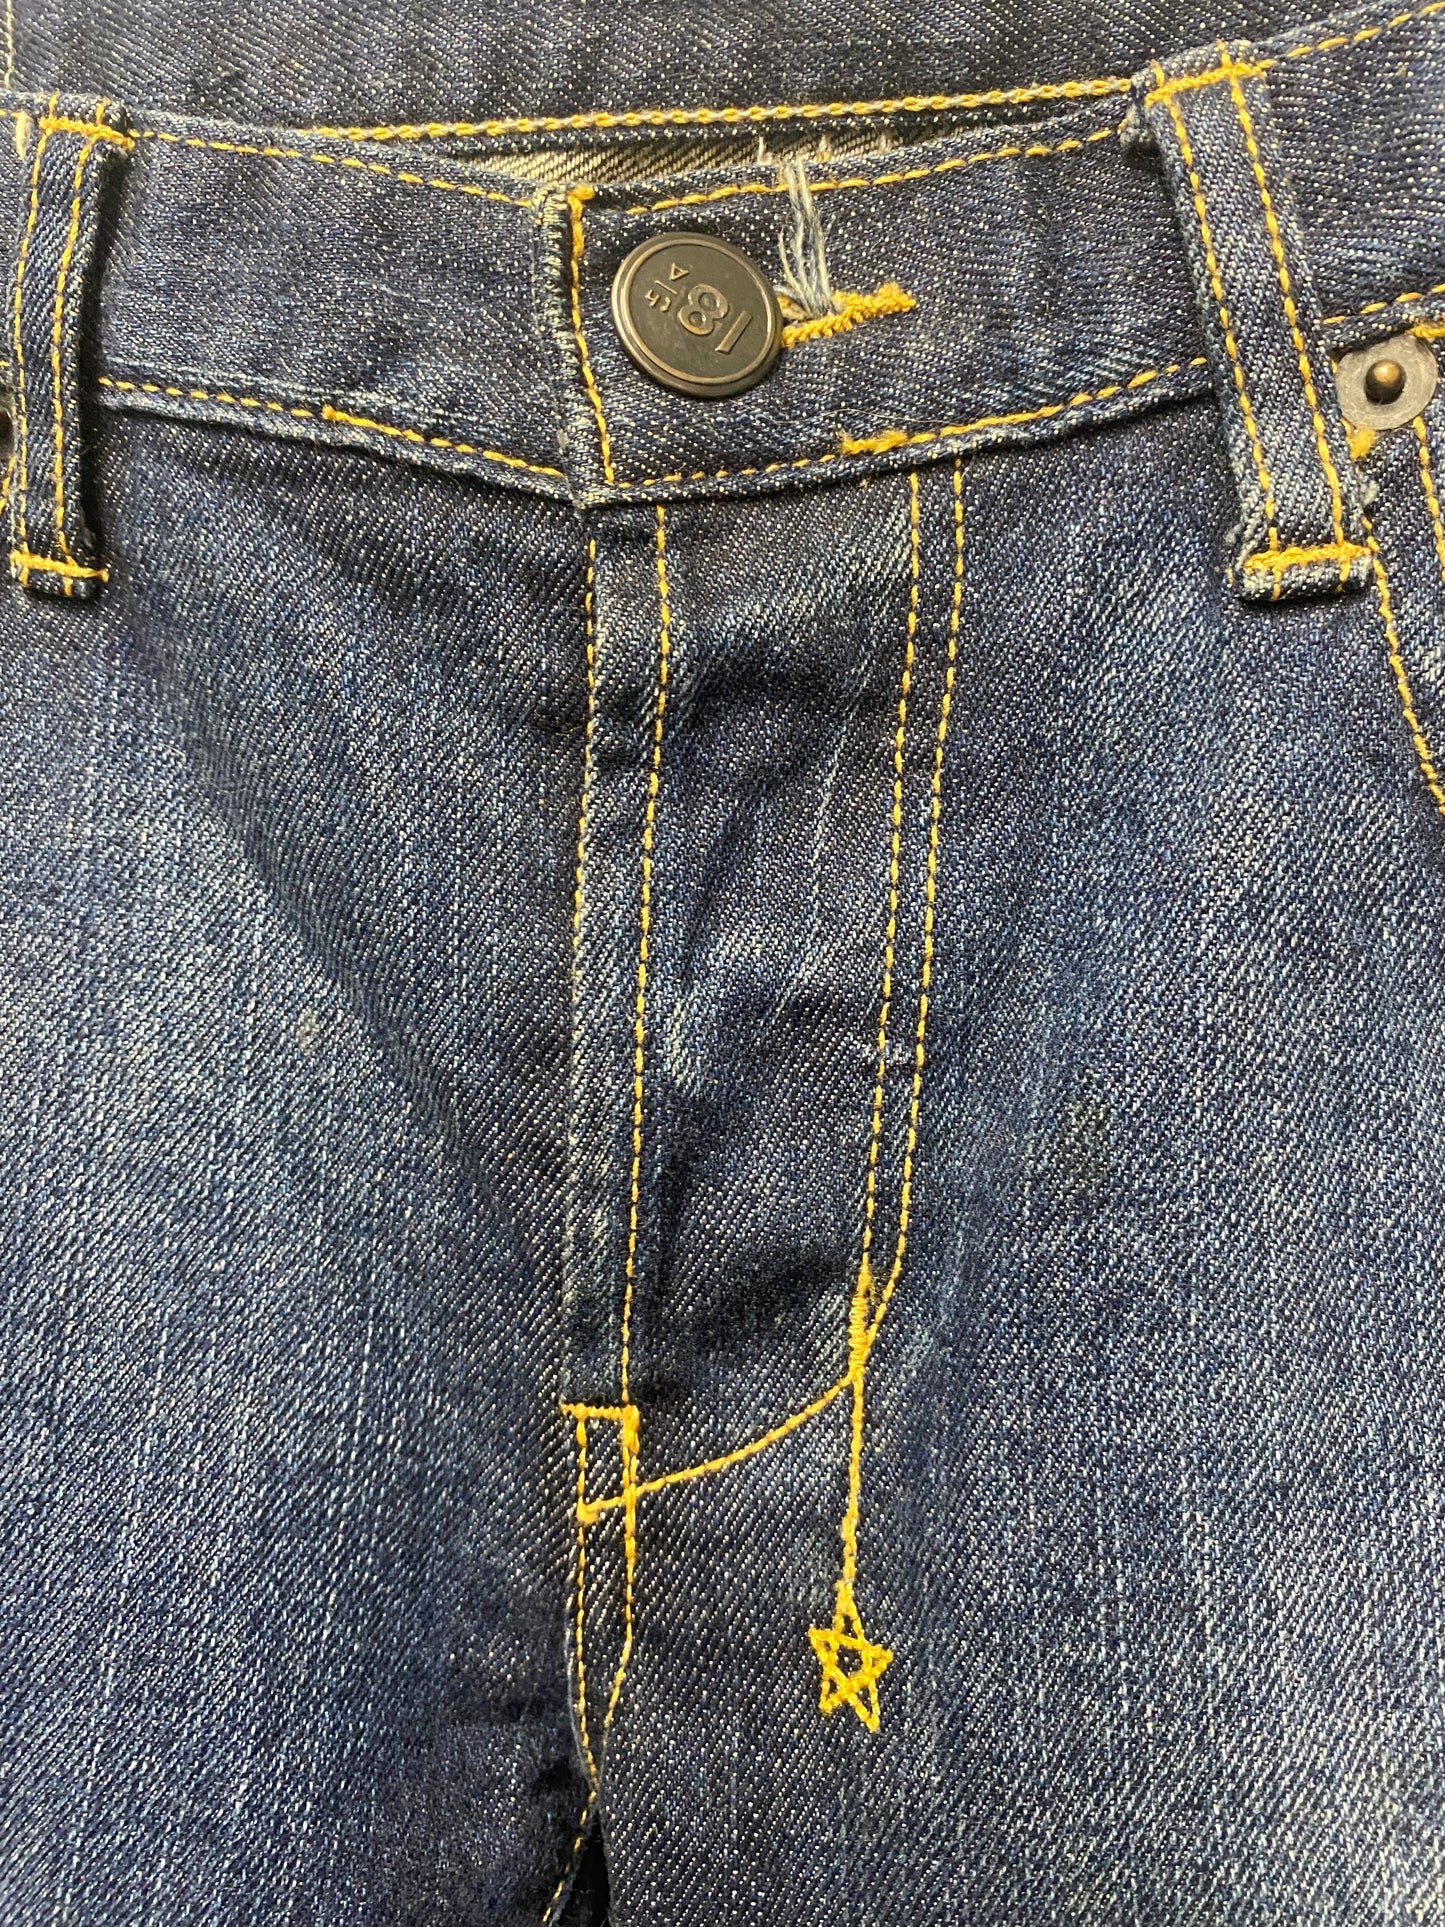 18th Amendment Rogers Dark Blue Skinny Fit Jeans 27